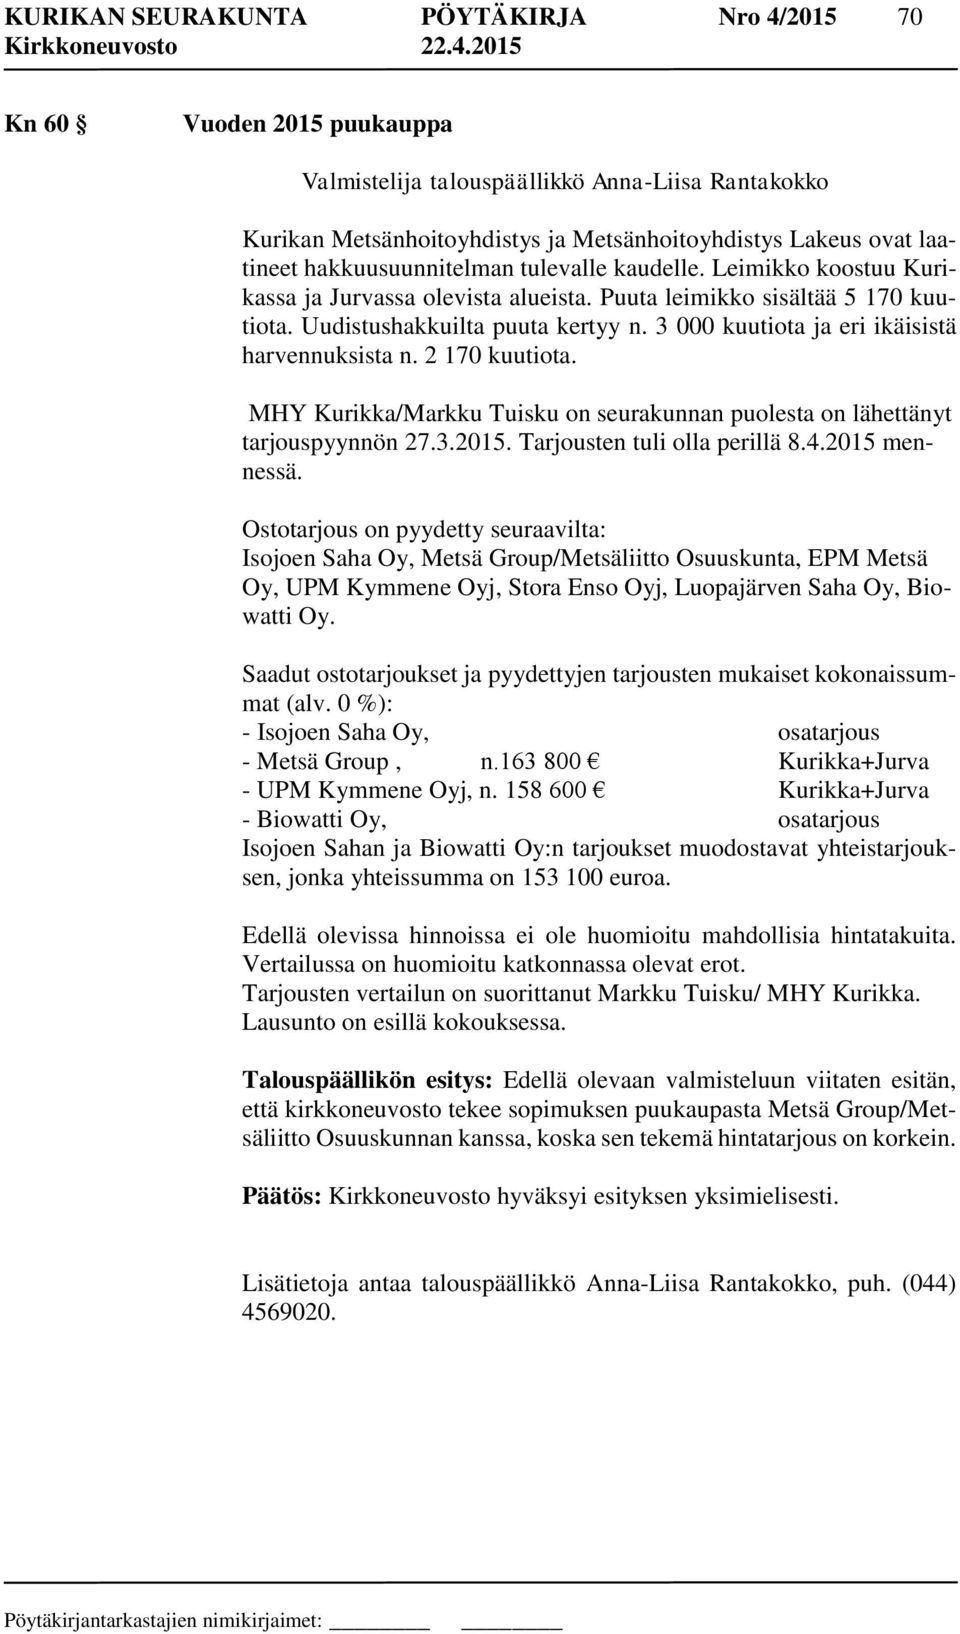 3 000 kuutiota ja eri ikäisistä harvennuksista n. 2 170 kuutiota. MHY Kurikka/Markku Tuisku on seurakunnan puolesta on lähettänyt tarjouspyynnön 27.3.2015. Tarjousten tuli olla perillä 8.4.